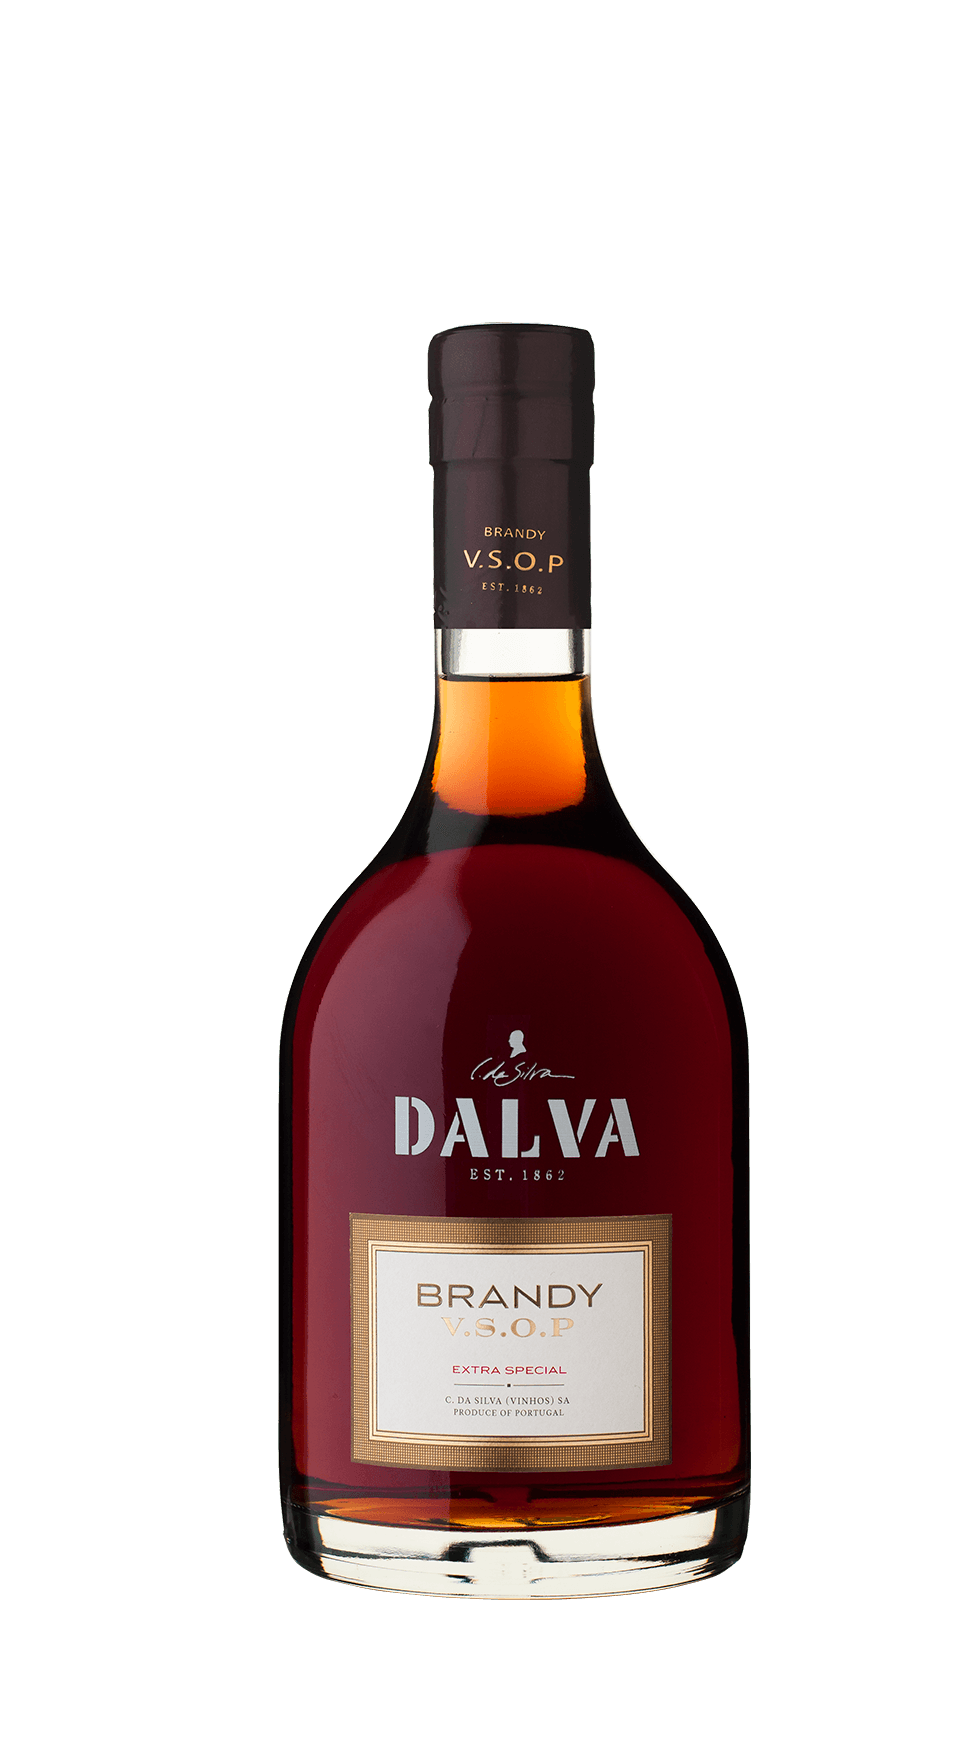 Dalva Brandy V.S.O.P. Extra Special 700 ml.